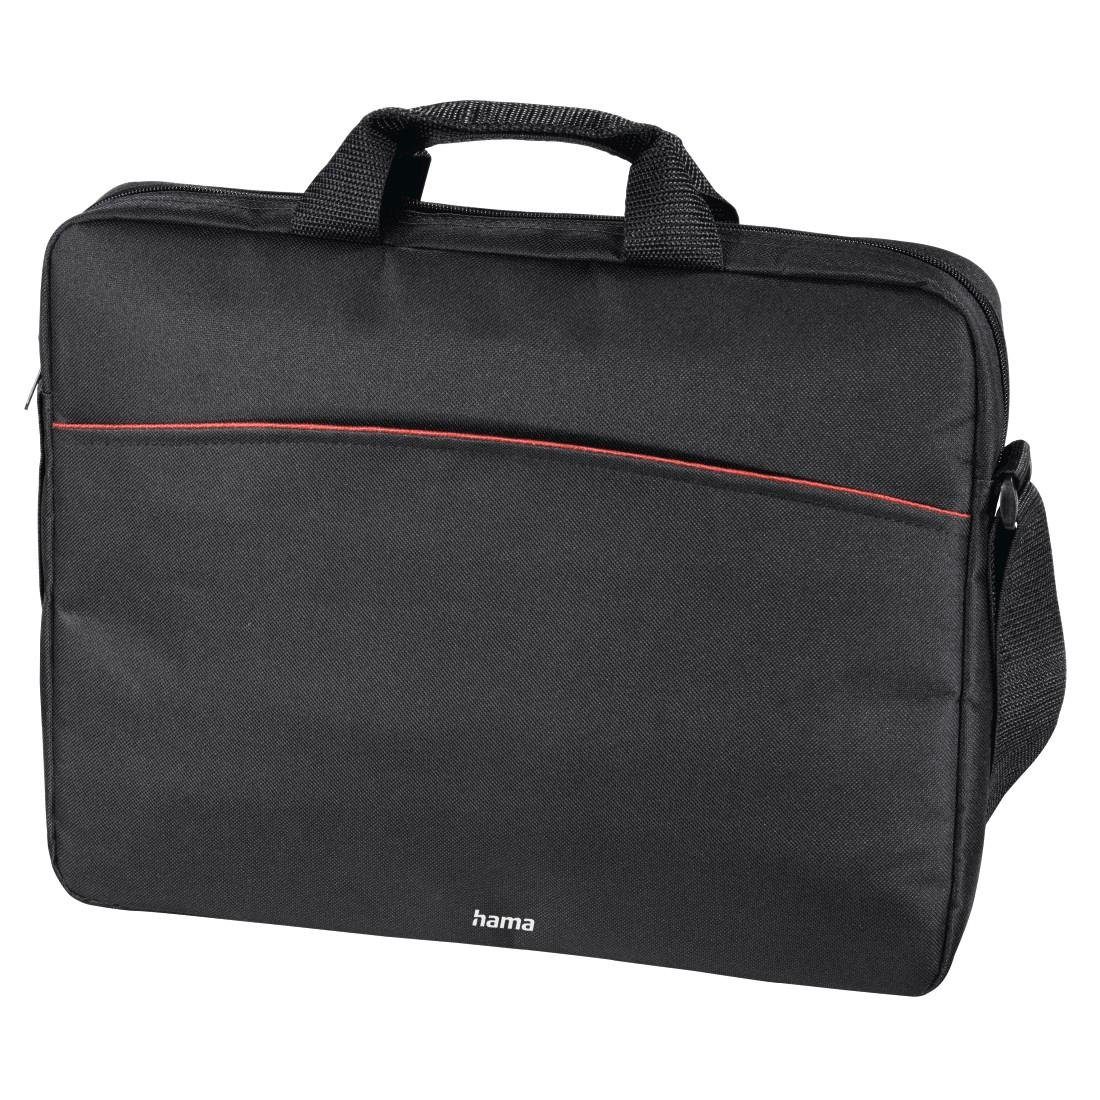 Hama Laptoptasche Laptop 40 Tasche bis cm (15,6), schwarz